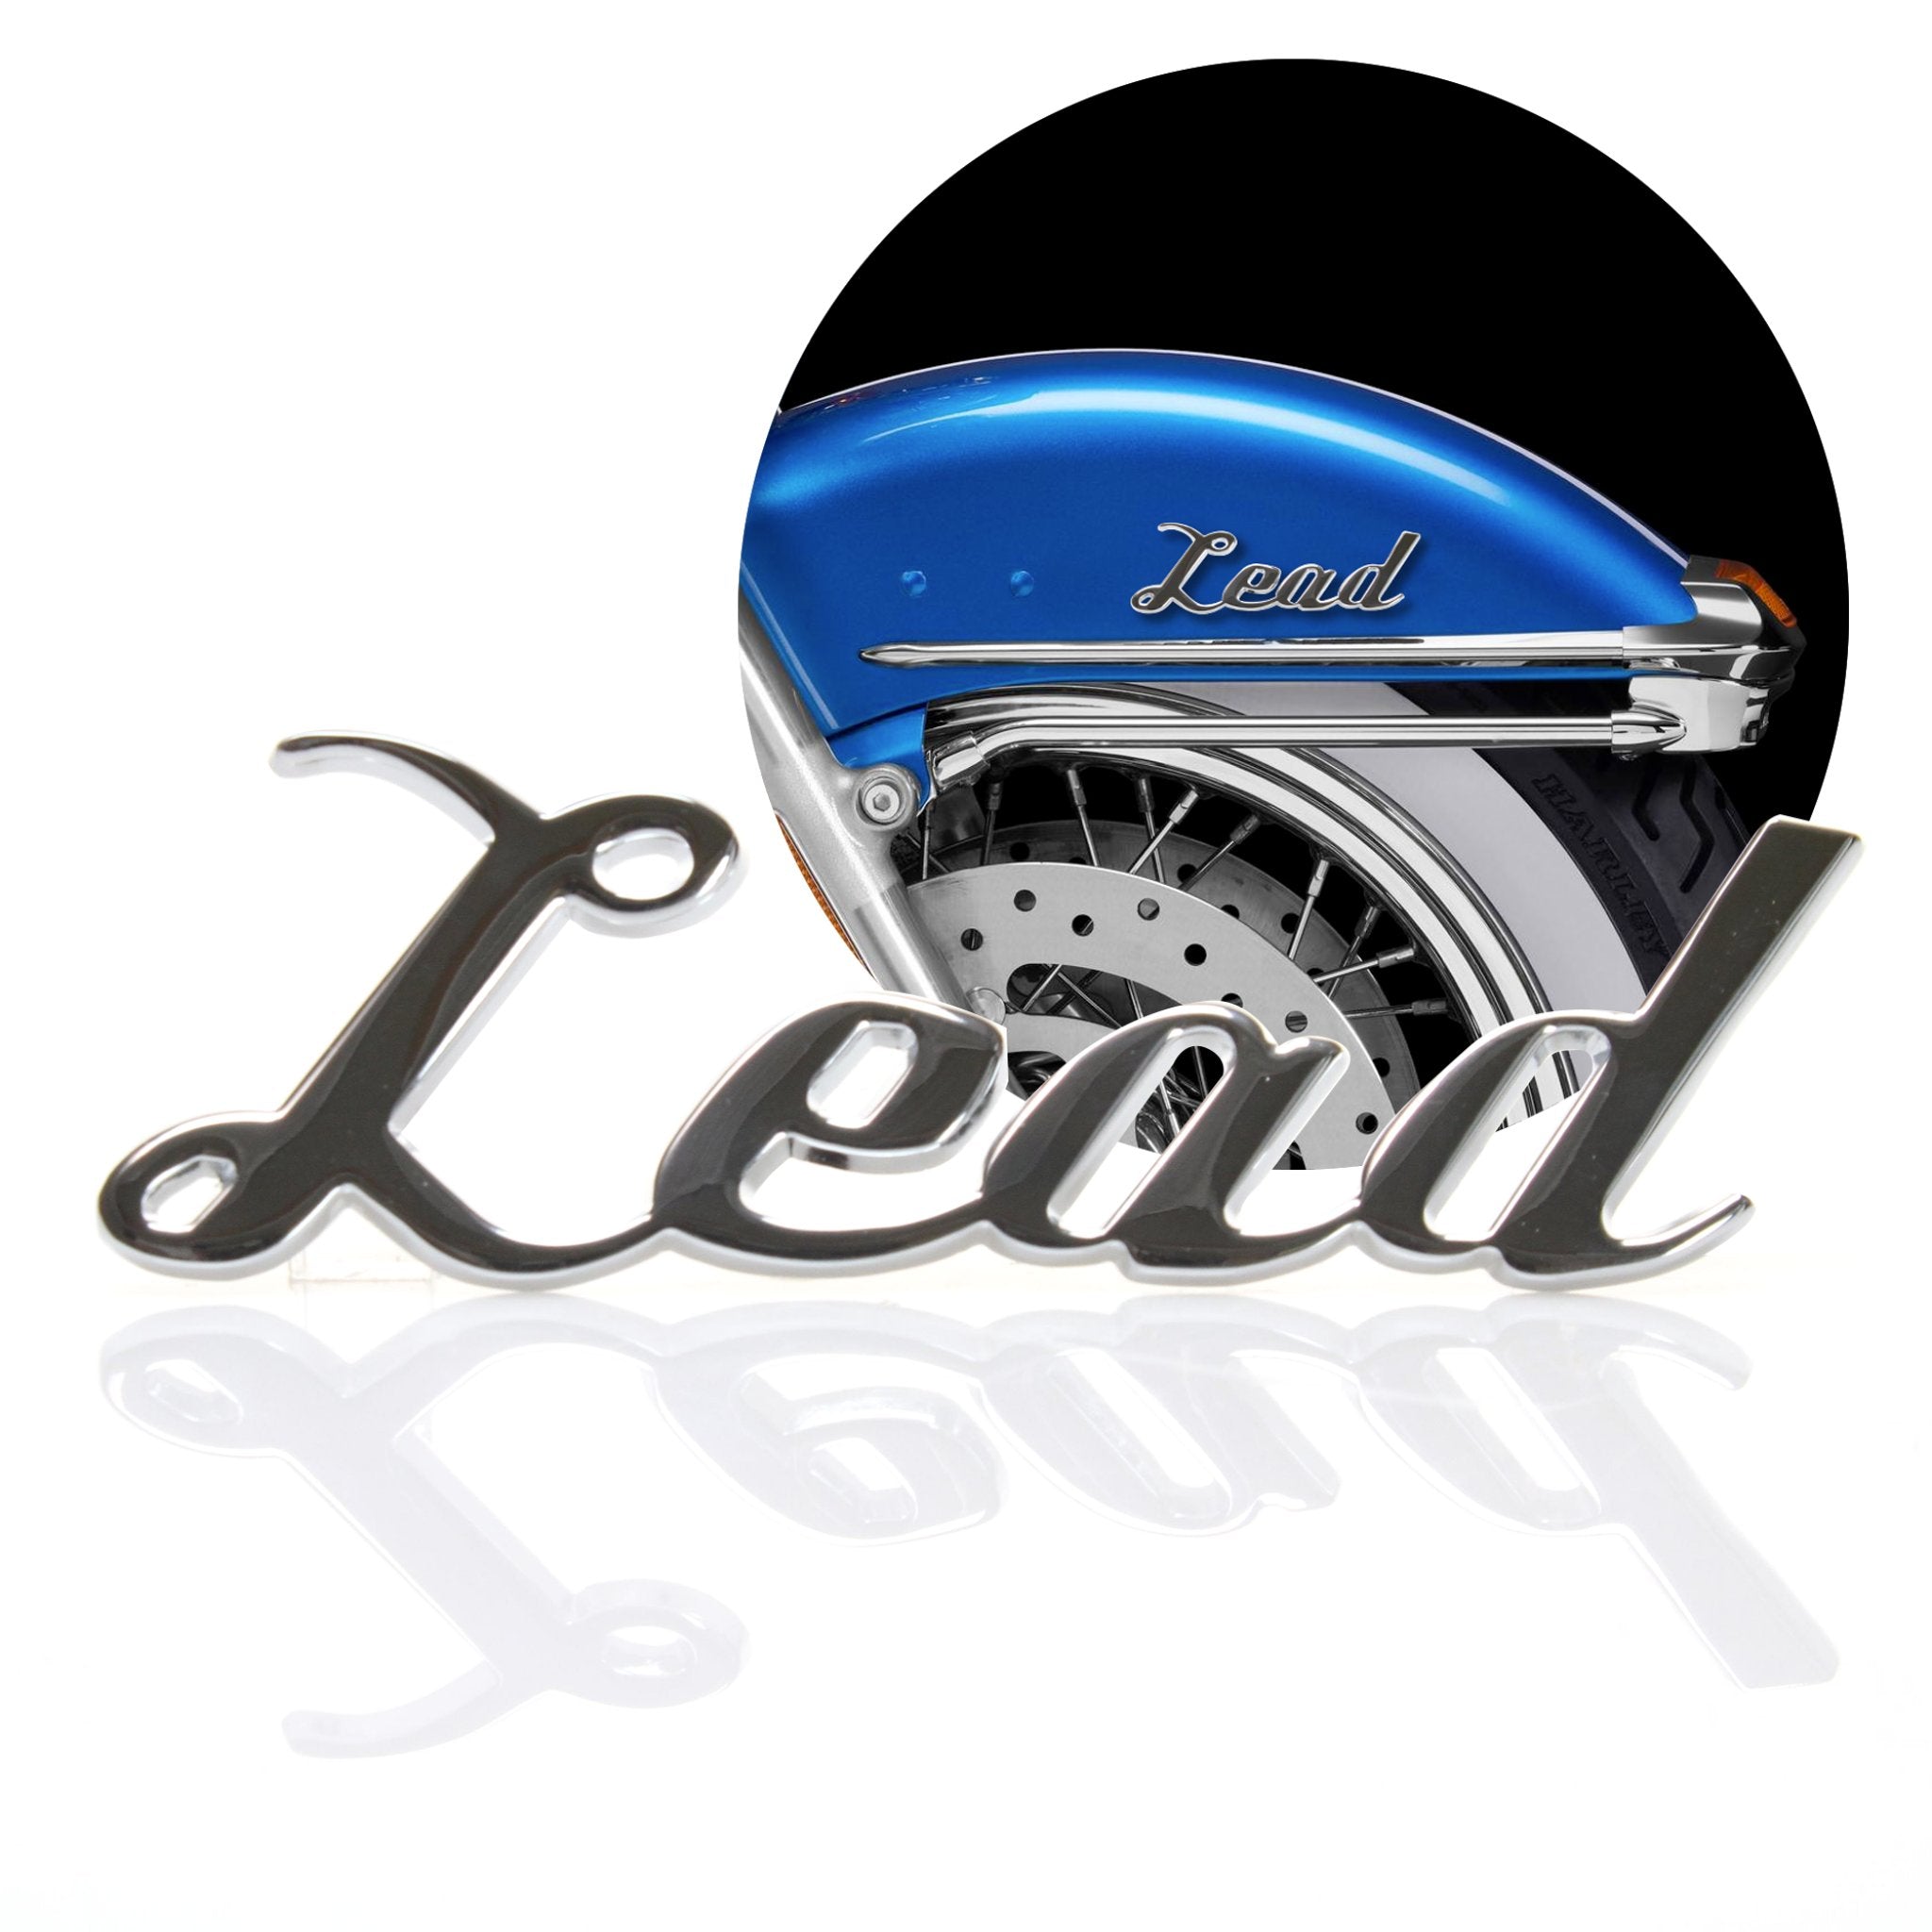 Emblema de guardabarros con letras "Lead" de Metal cromado, insignia para coche, camión, Hot Rod